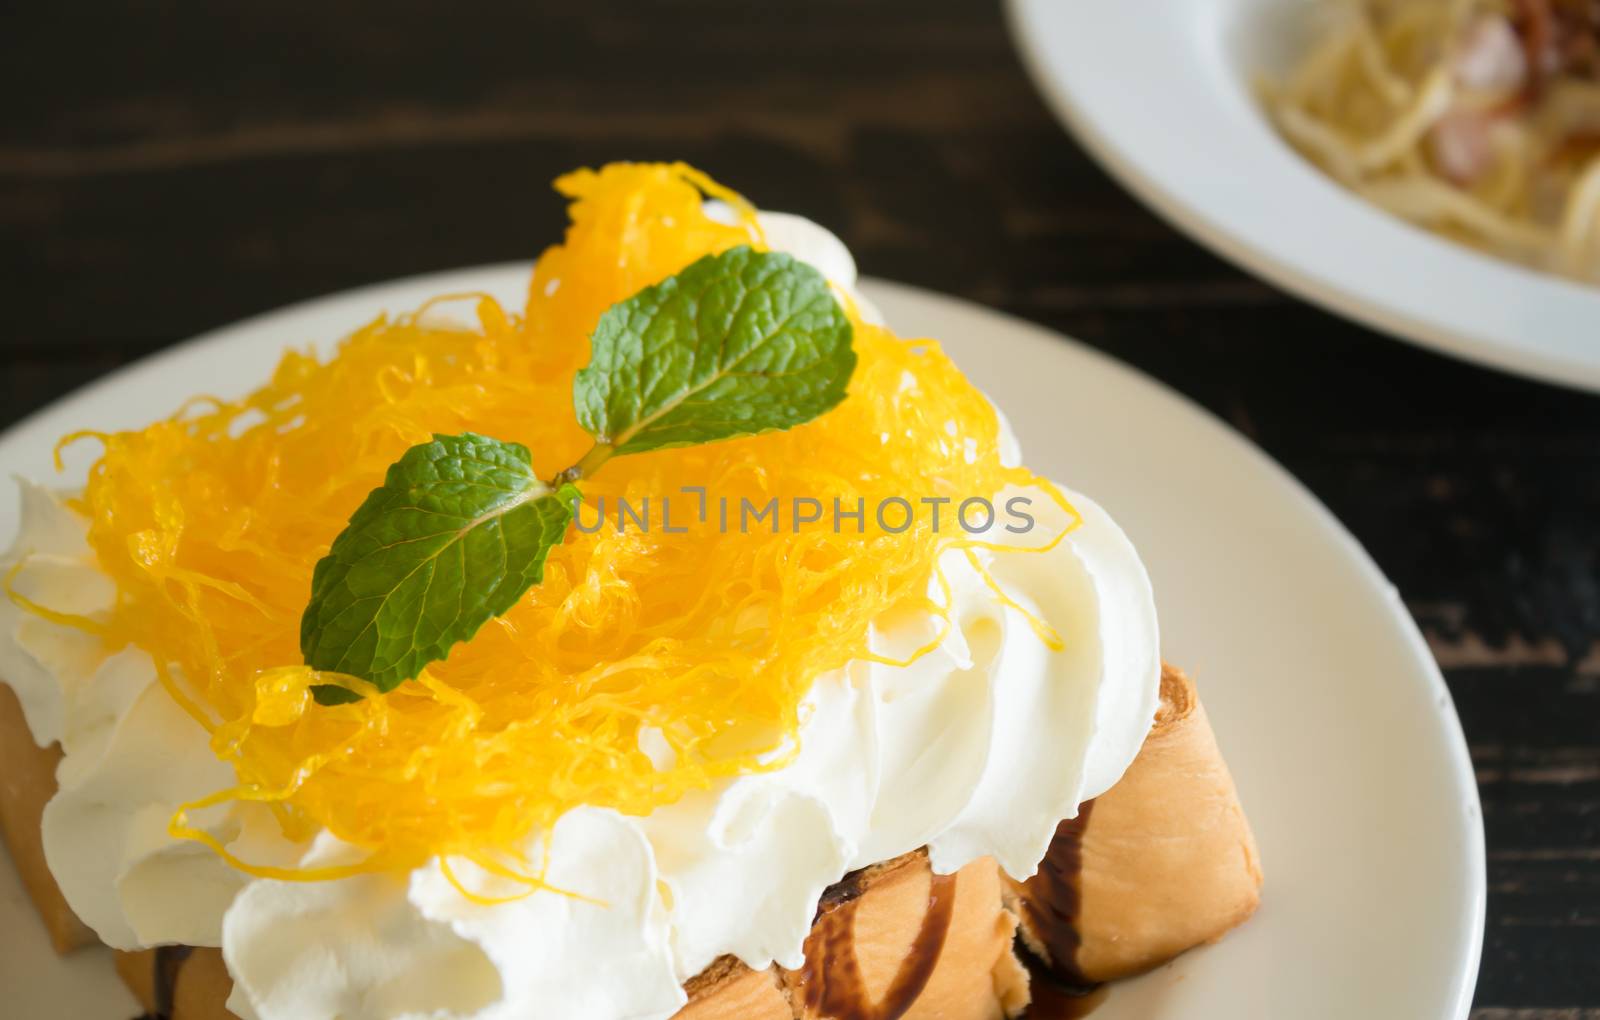 Golden Egg Yolk Threads or Foi Thong Thai Dessert Whipped Cream  by steafpong